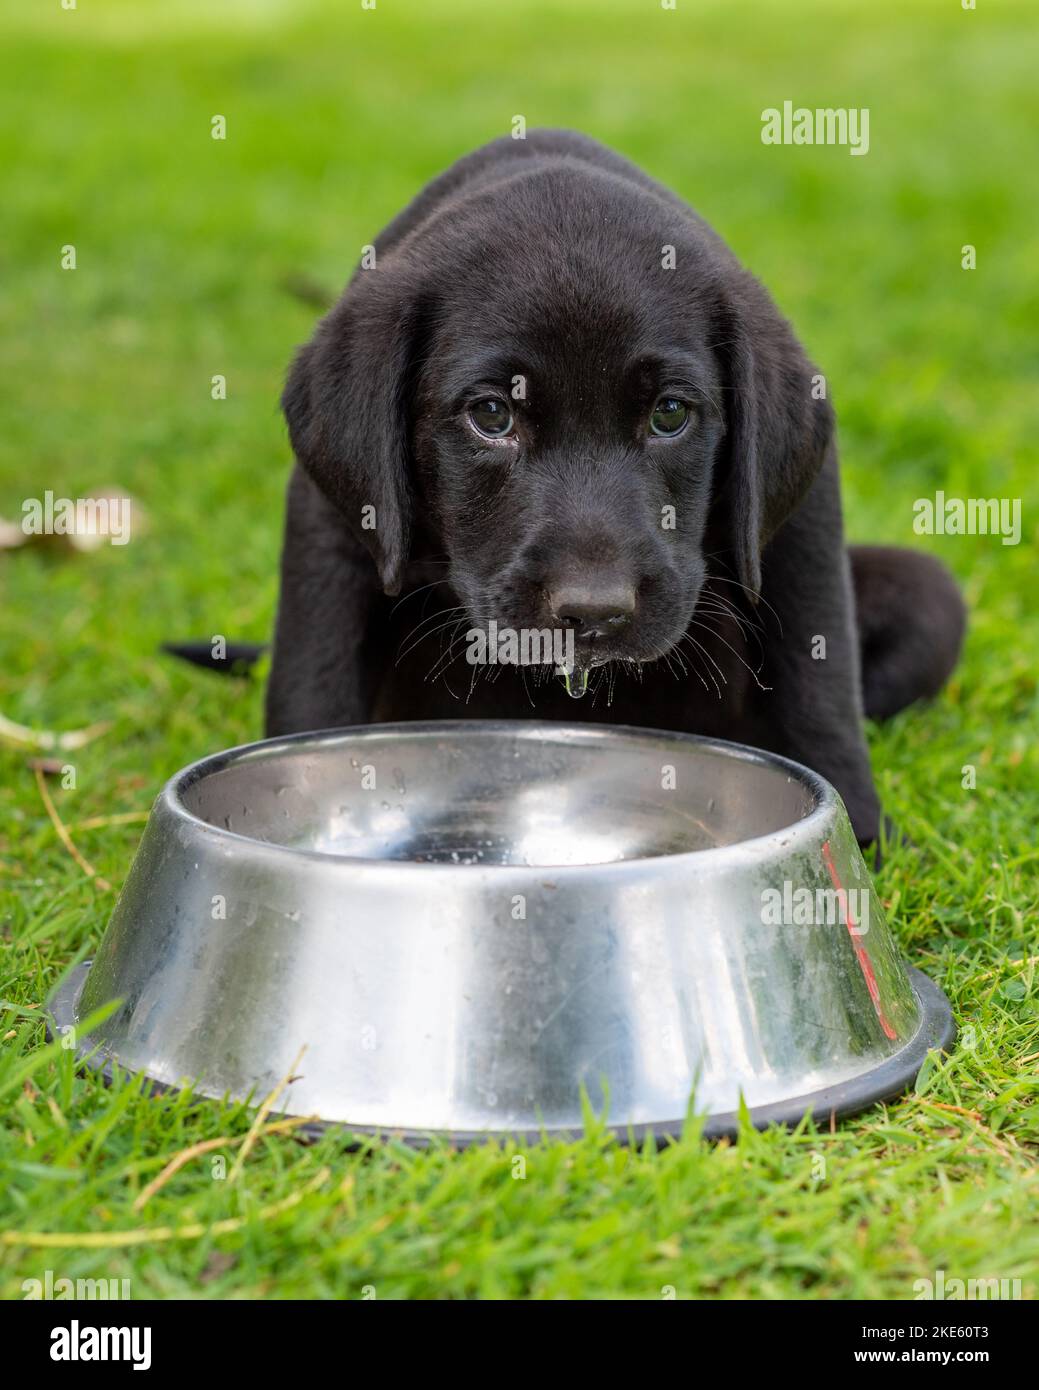 Schwarzer Labrador Welpenhund sieht traurig aus und trinkt aus einer Schüssel Wasser Stockfoto